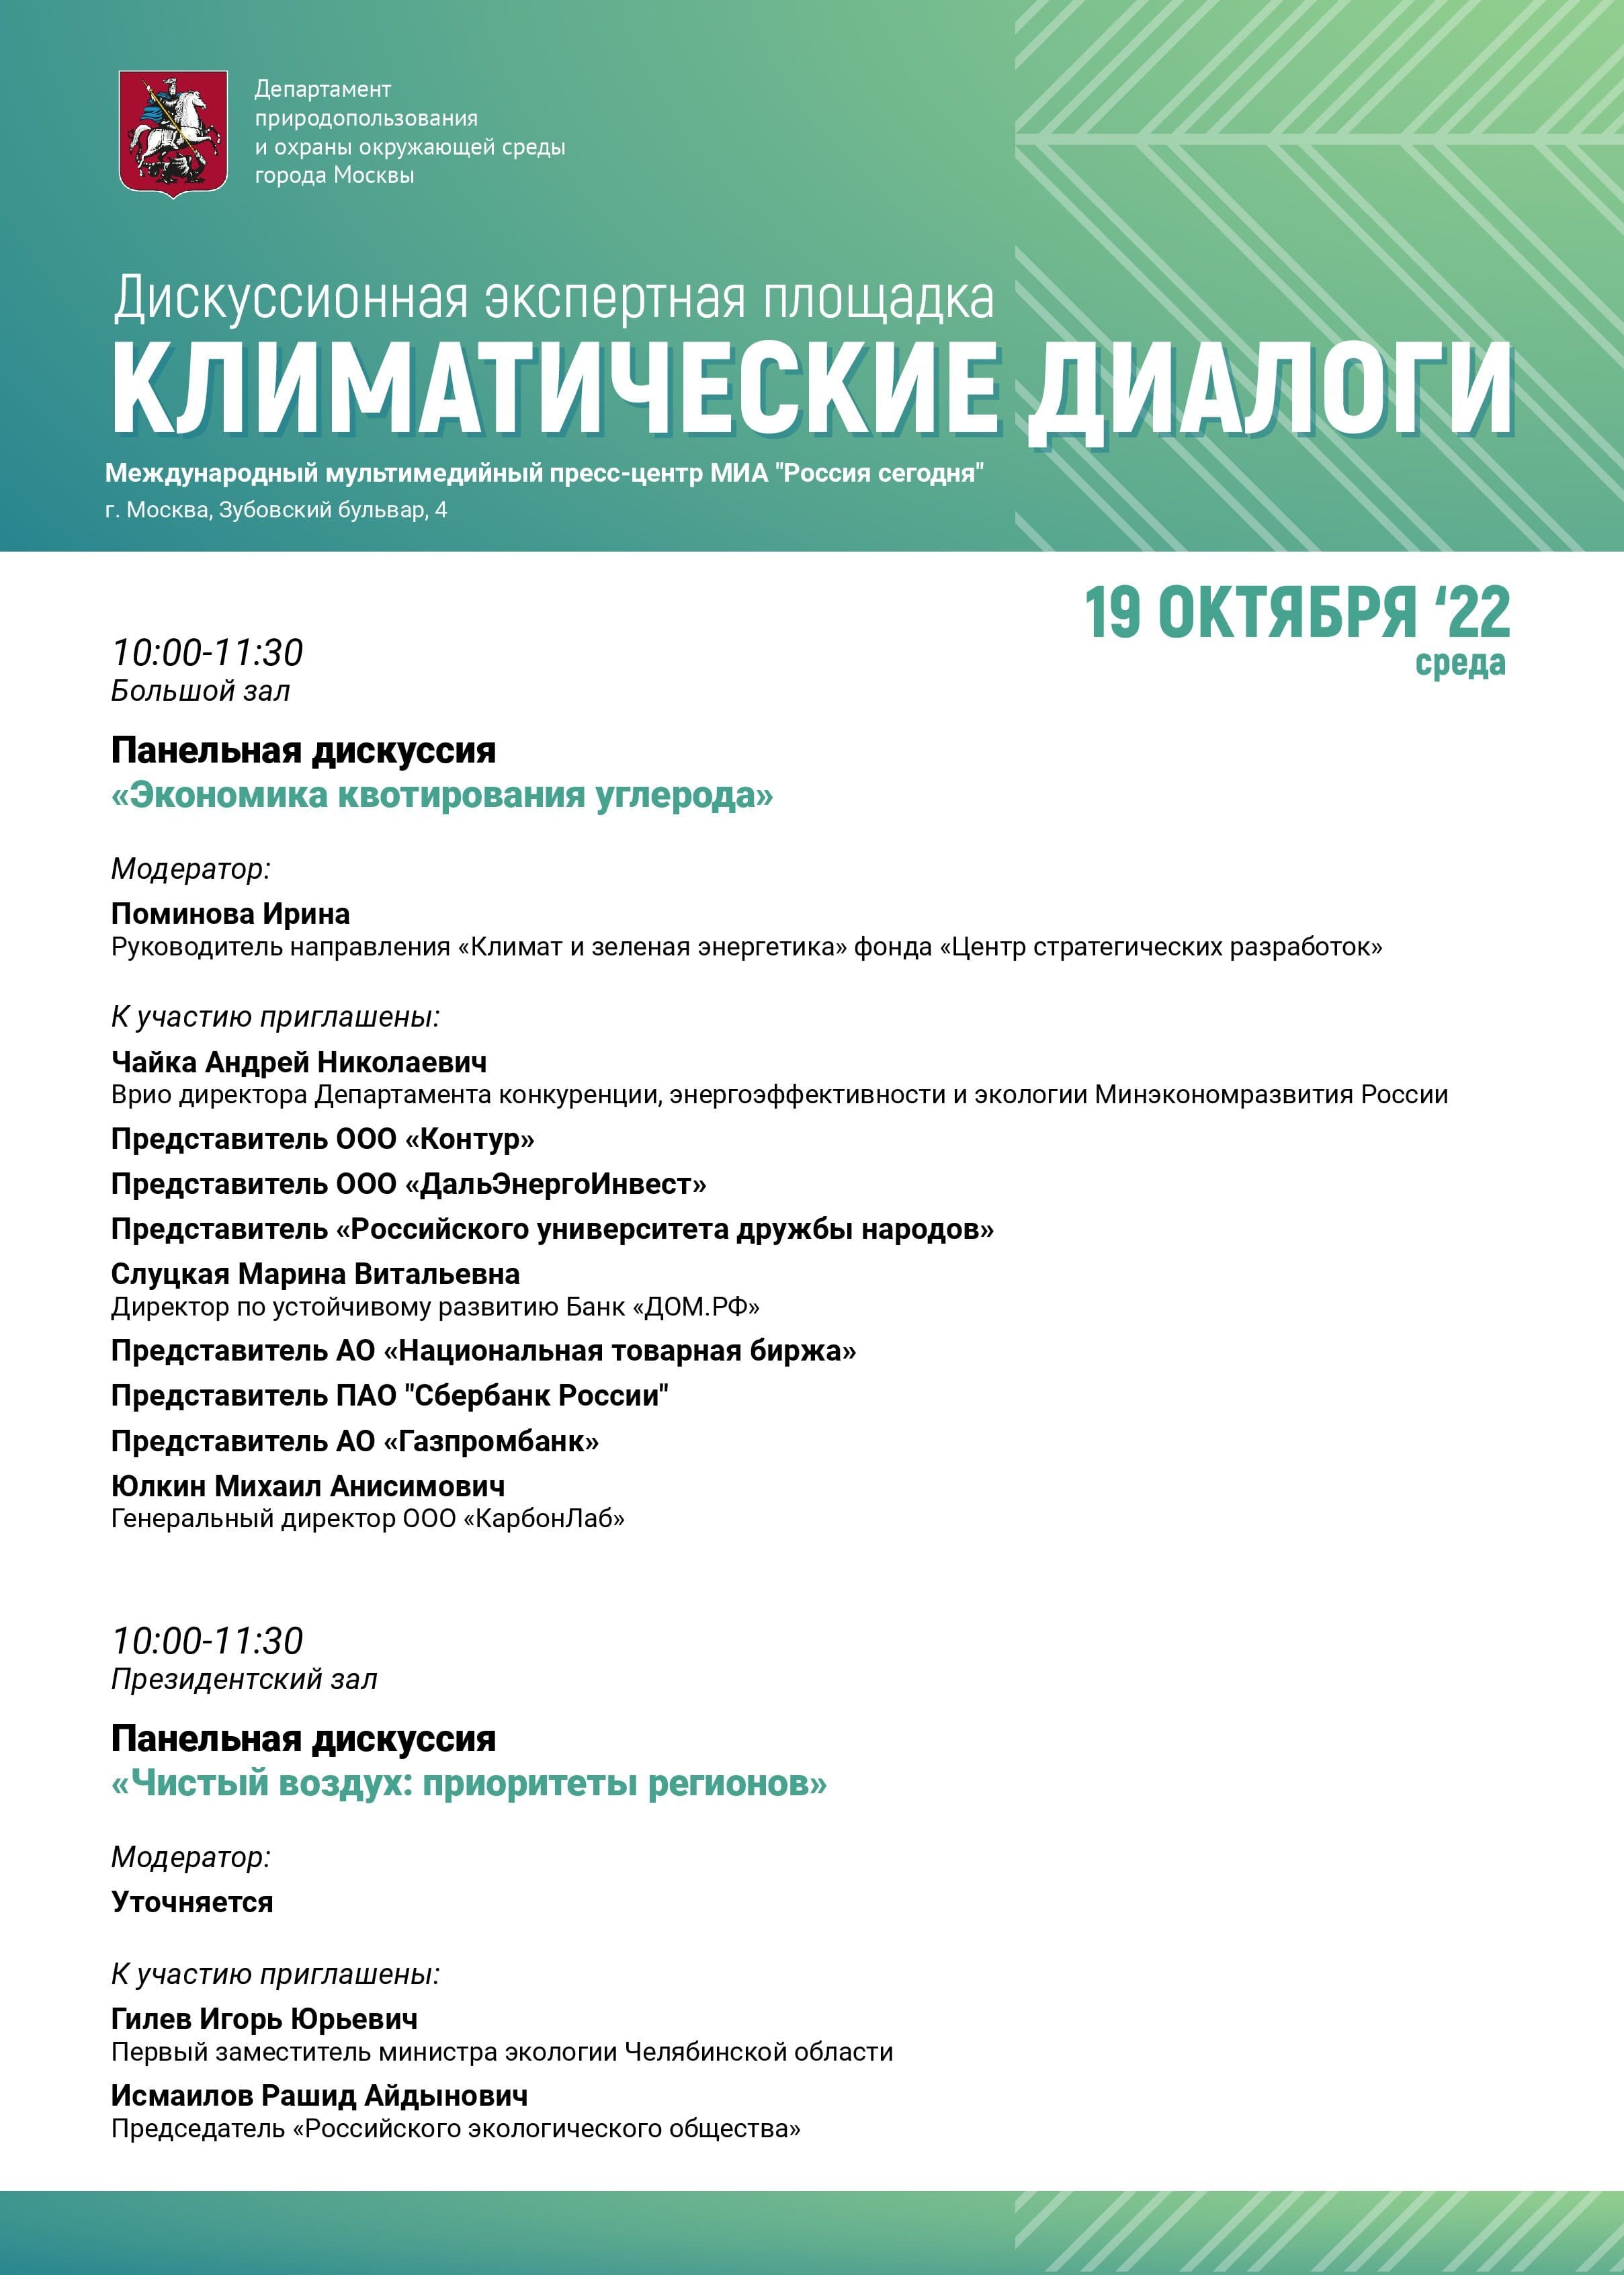 В Москве 18 и 19 октября пройдут «Климатические диалоги» - фото 7